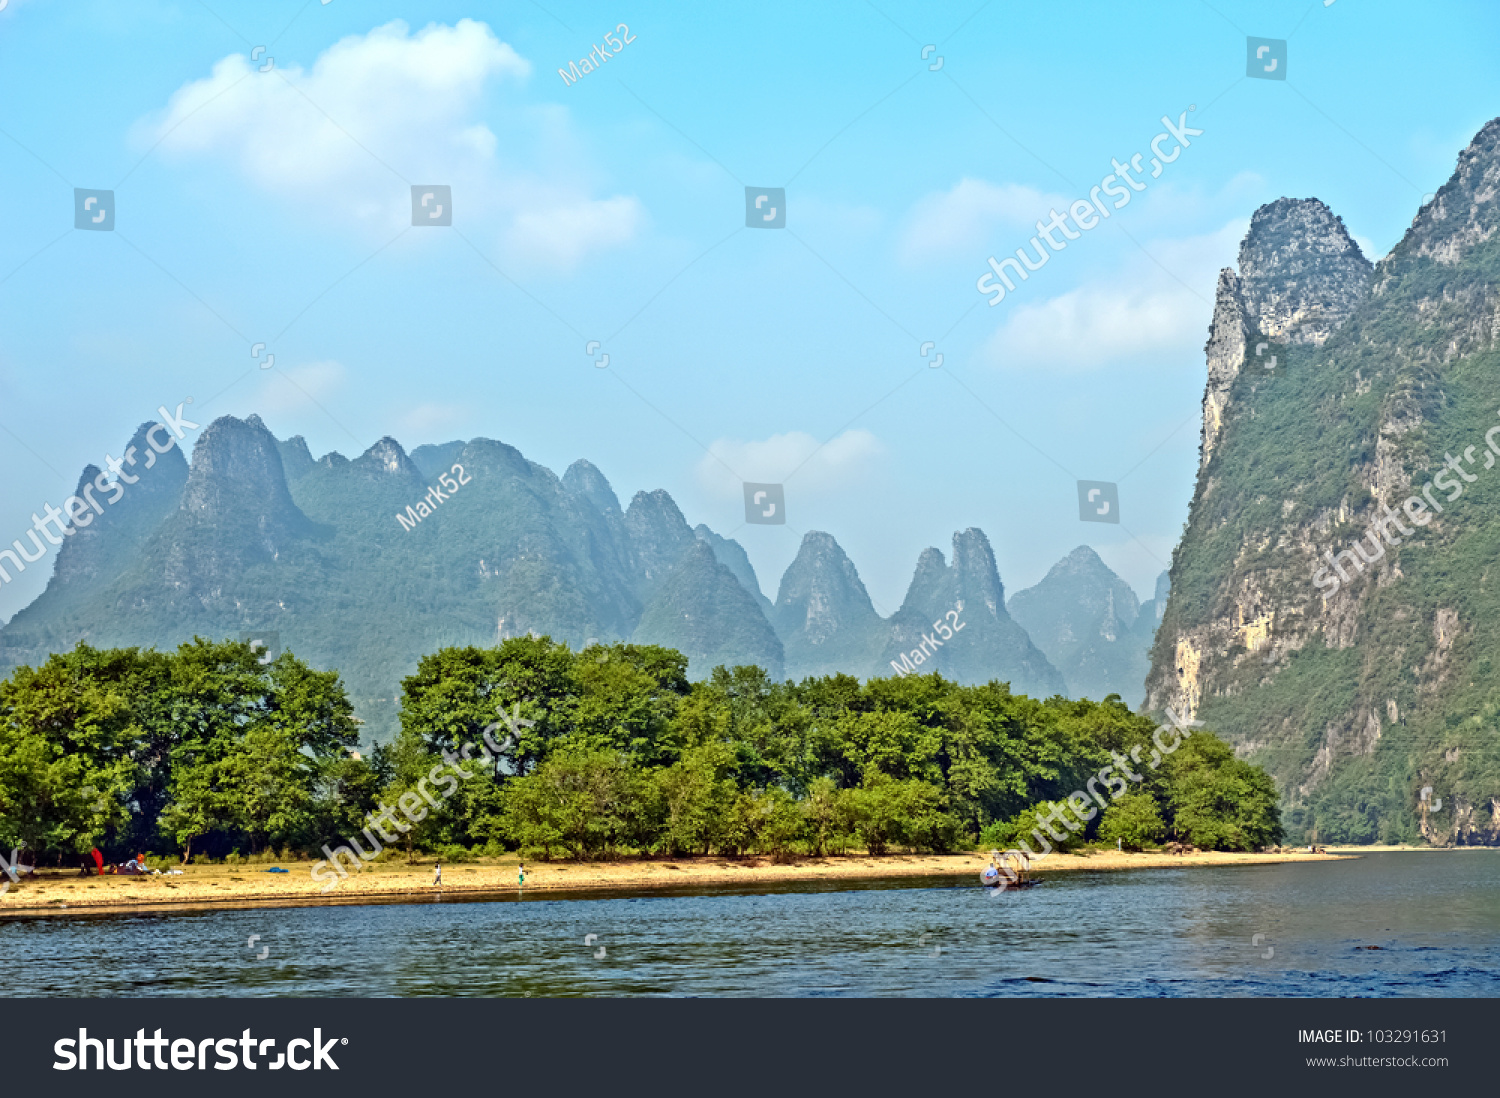 Famous Karst Mountains Along The Li River Near Yangshuo, Guangxi ...